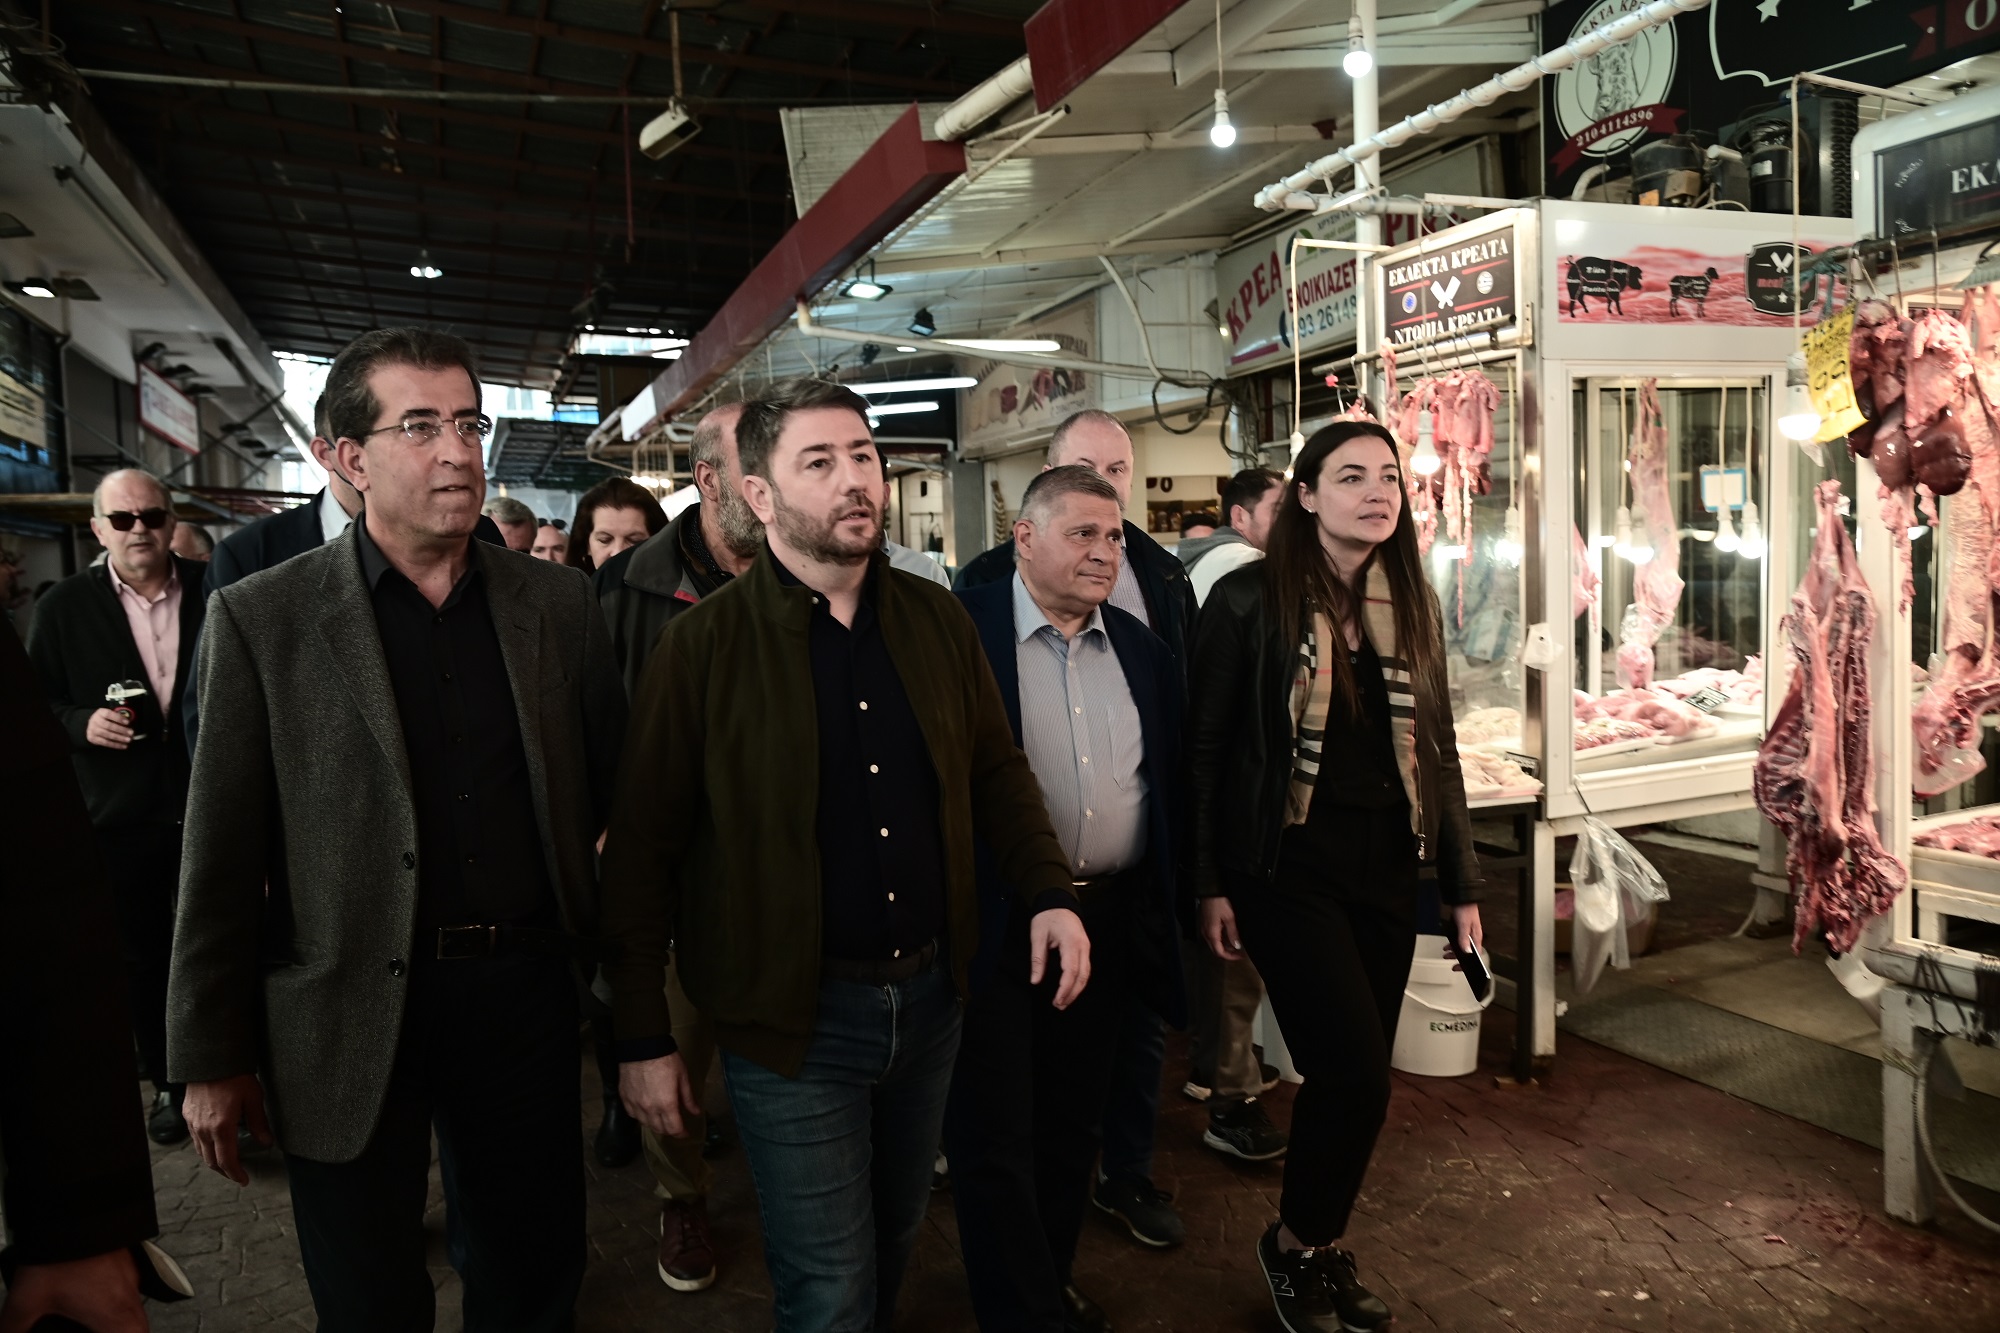 Νίκος Ανδρουλάκης από Πειραιά: Οι εκλογές ευκαιρία νέας αρχής για το λαό